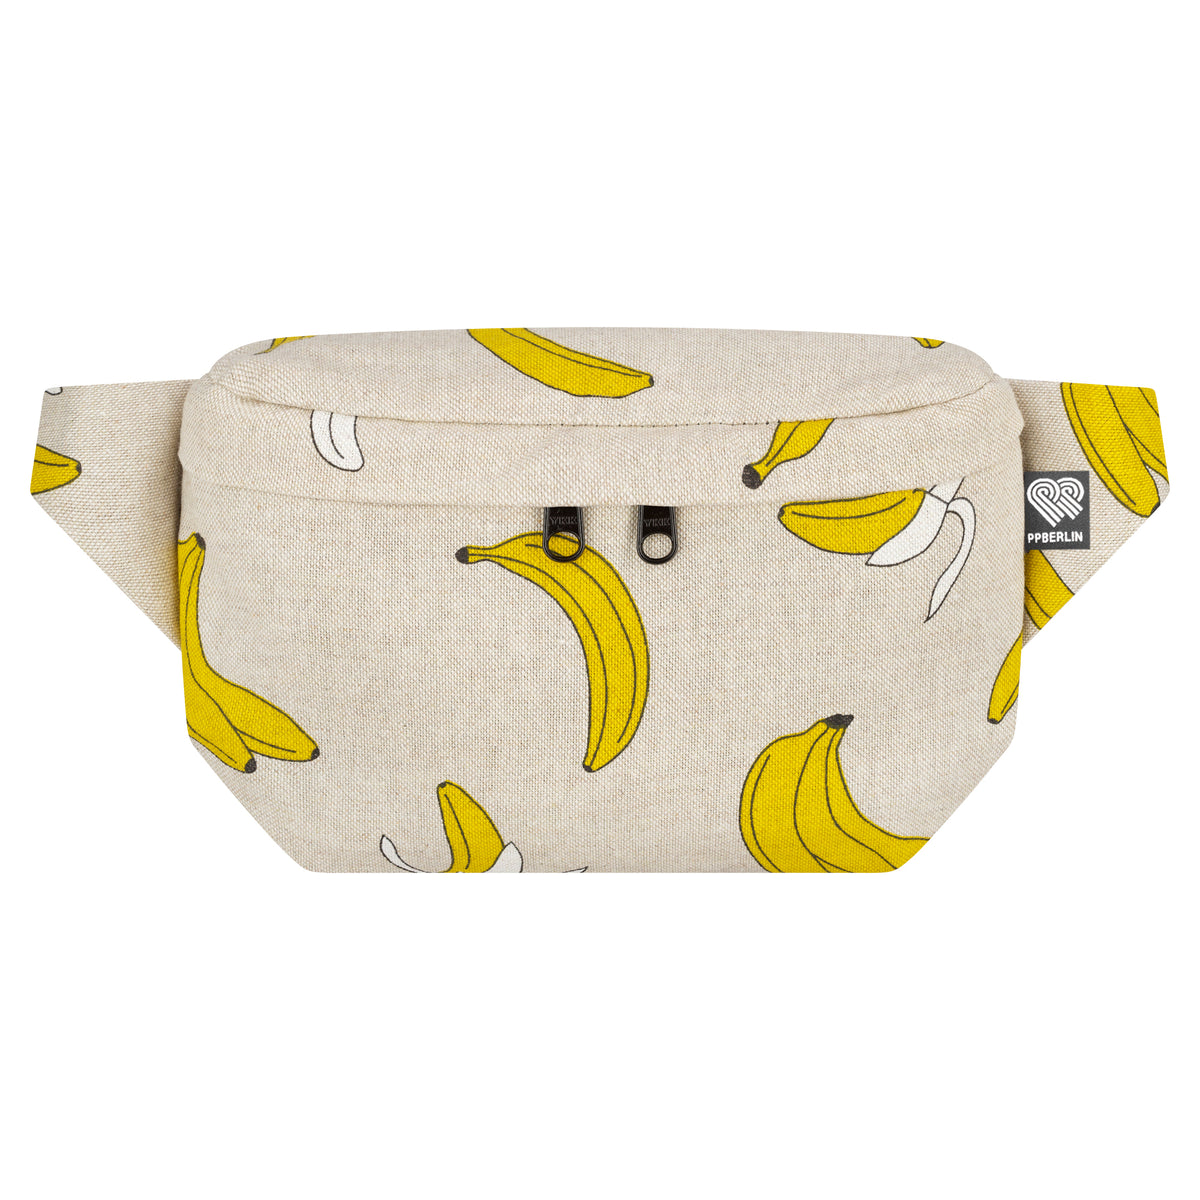 Bauchtasche eckig, Canv Banane (0) #motiv_banane